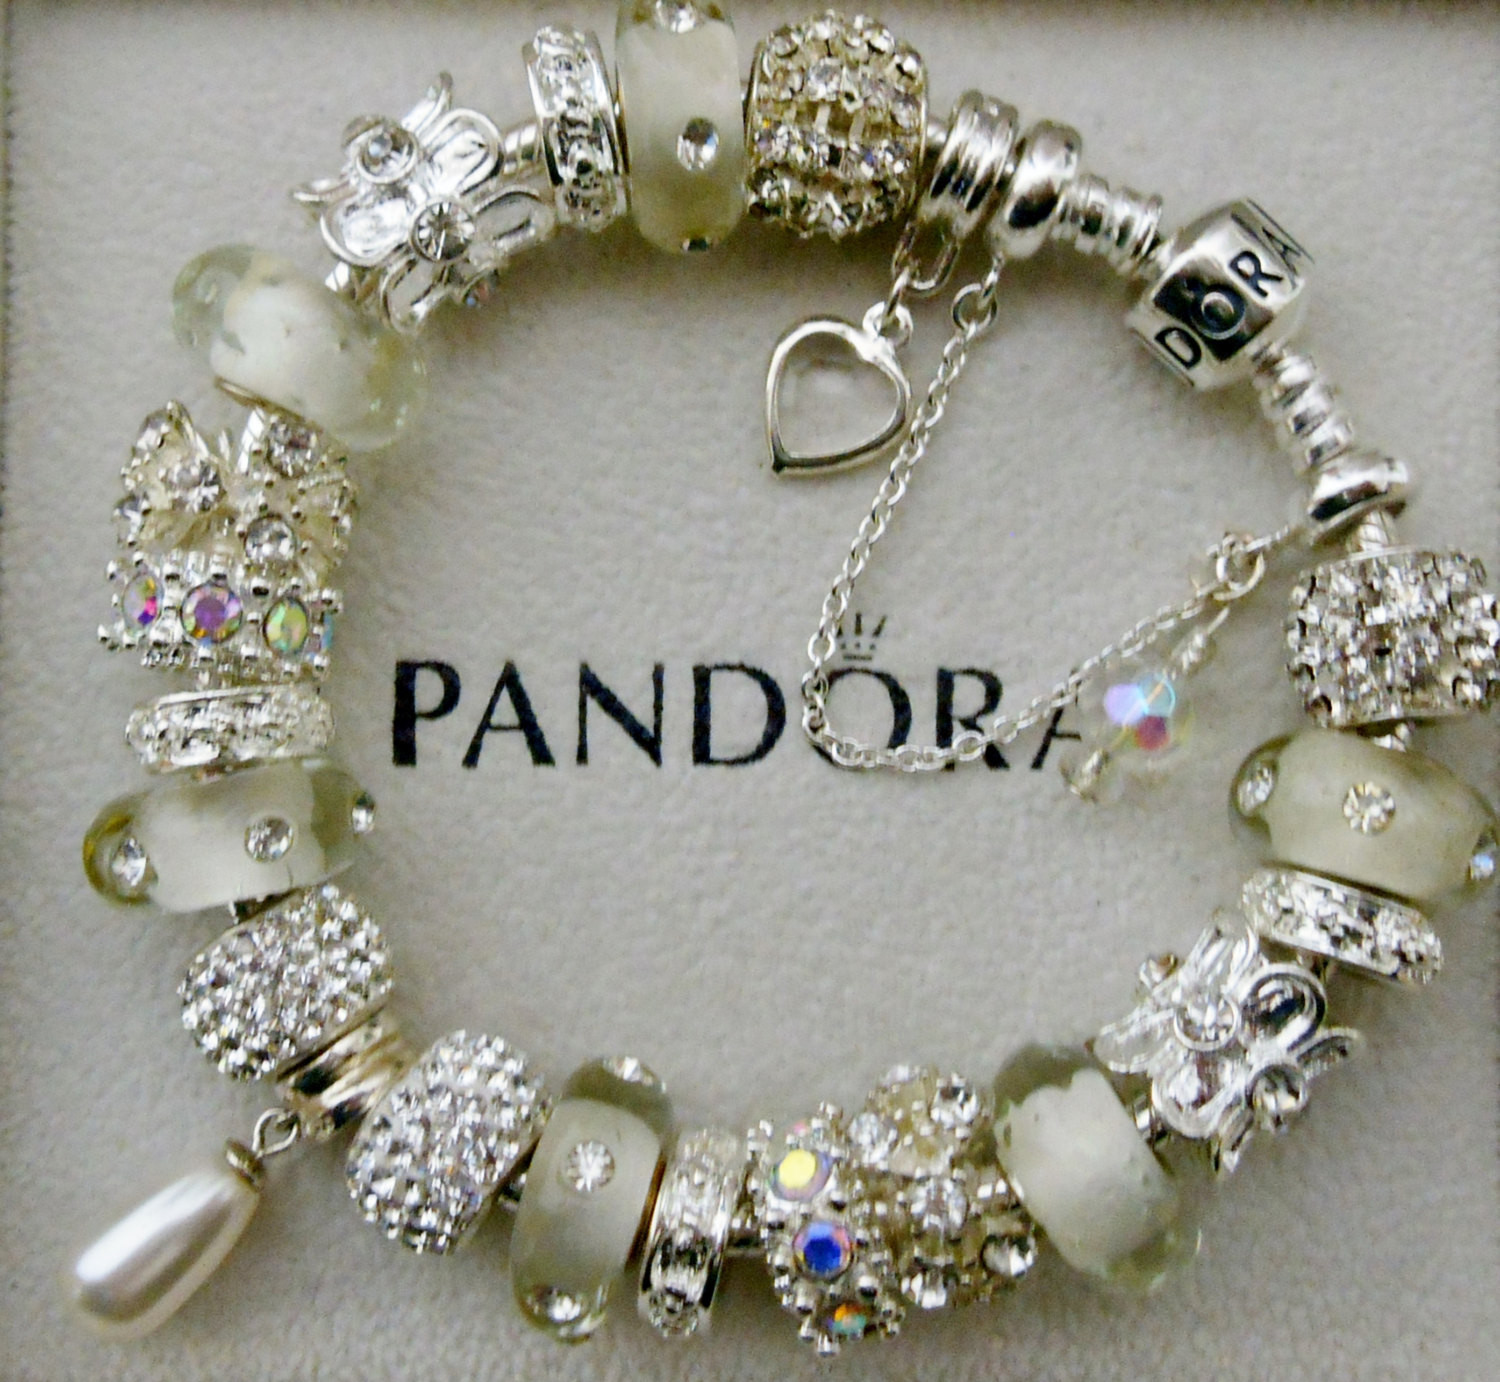 Pandora Bracelets Charms
 Authentic Pandora Bracelet or unbranded European charm